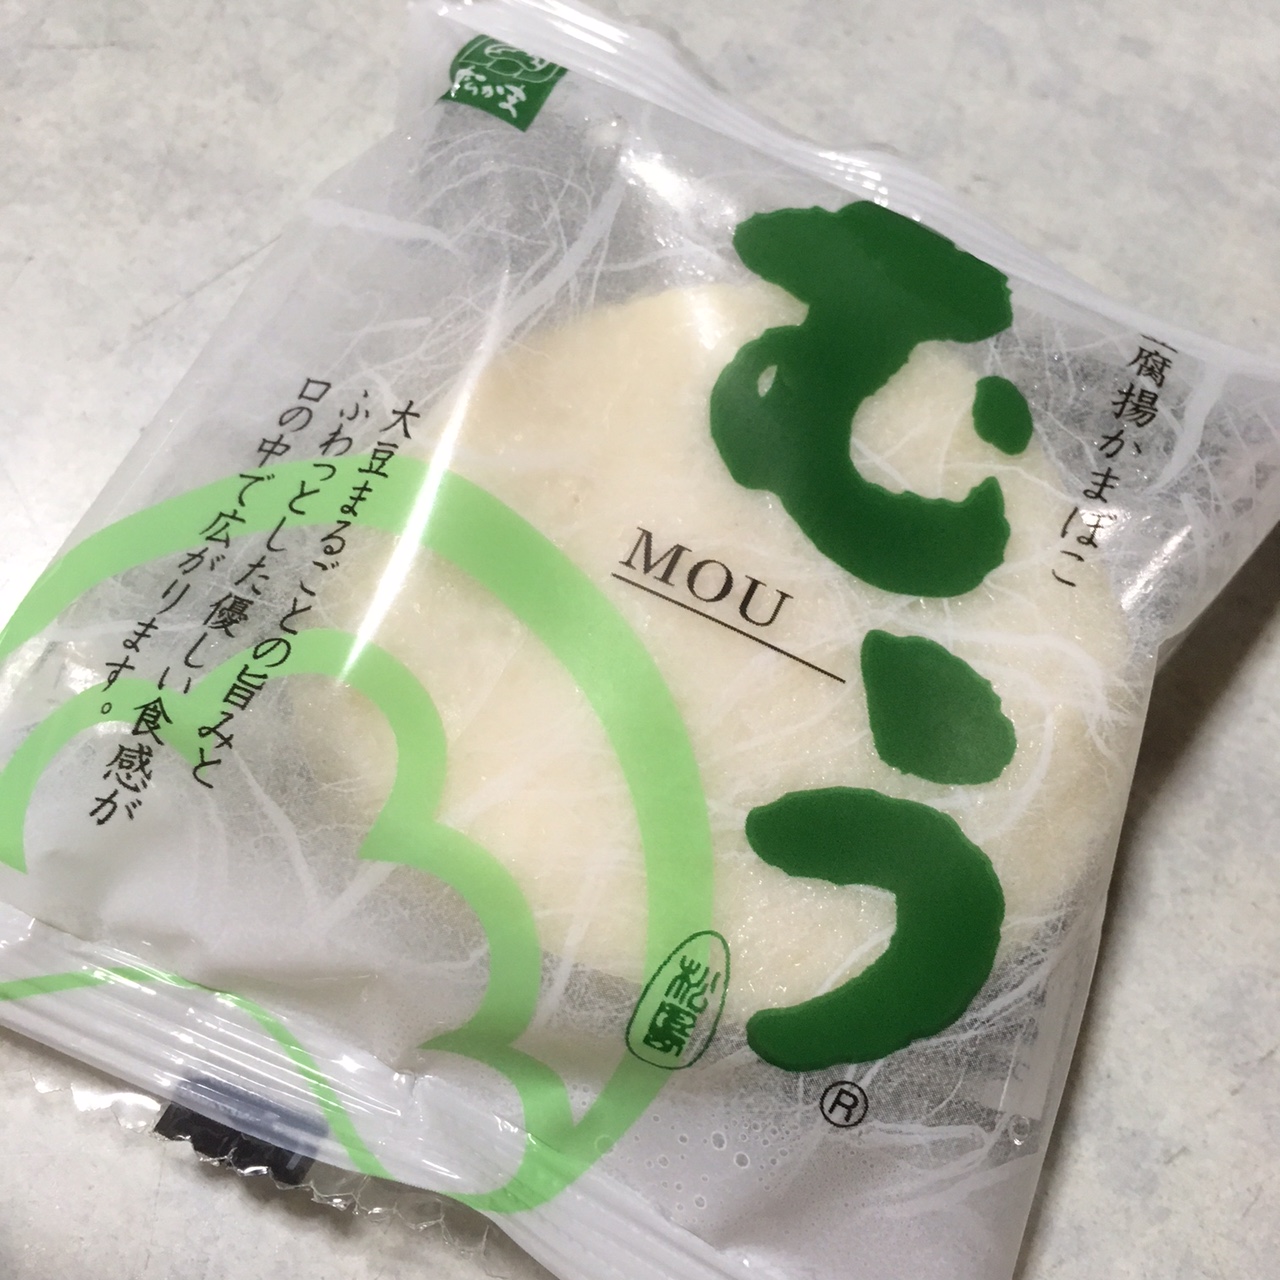 仙台土産にお豆腐揚げかまぼこ むうはいかが 笹かまぼことは一味違います My Favorite Things